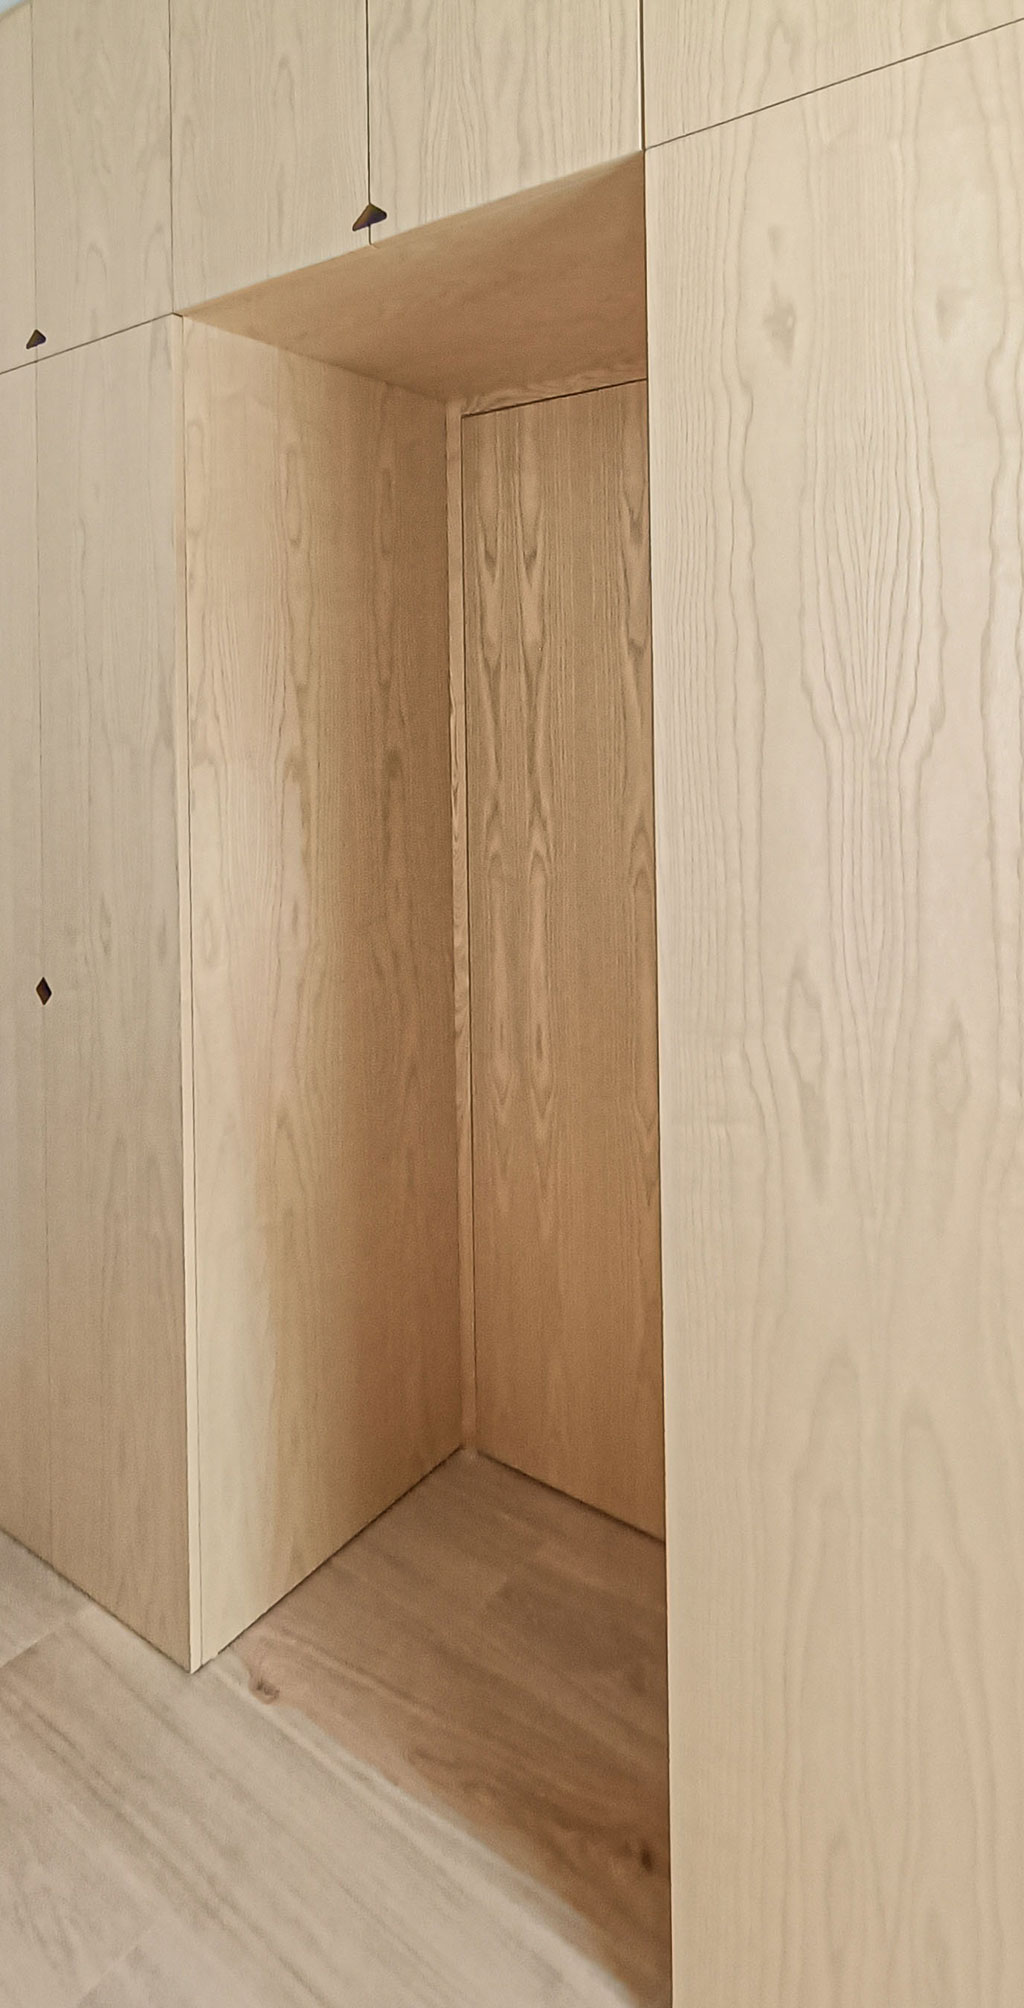 Se plantea como un muro de madera que separa el dormitorio del pasillo, para lo que se integra la puerta  en el propio armario utilizando el mismo tablero, eliminando tapajuntas, bisagras (ocultas) y manilla (oculta de cierre magnético)